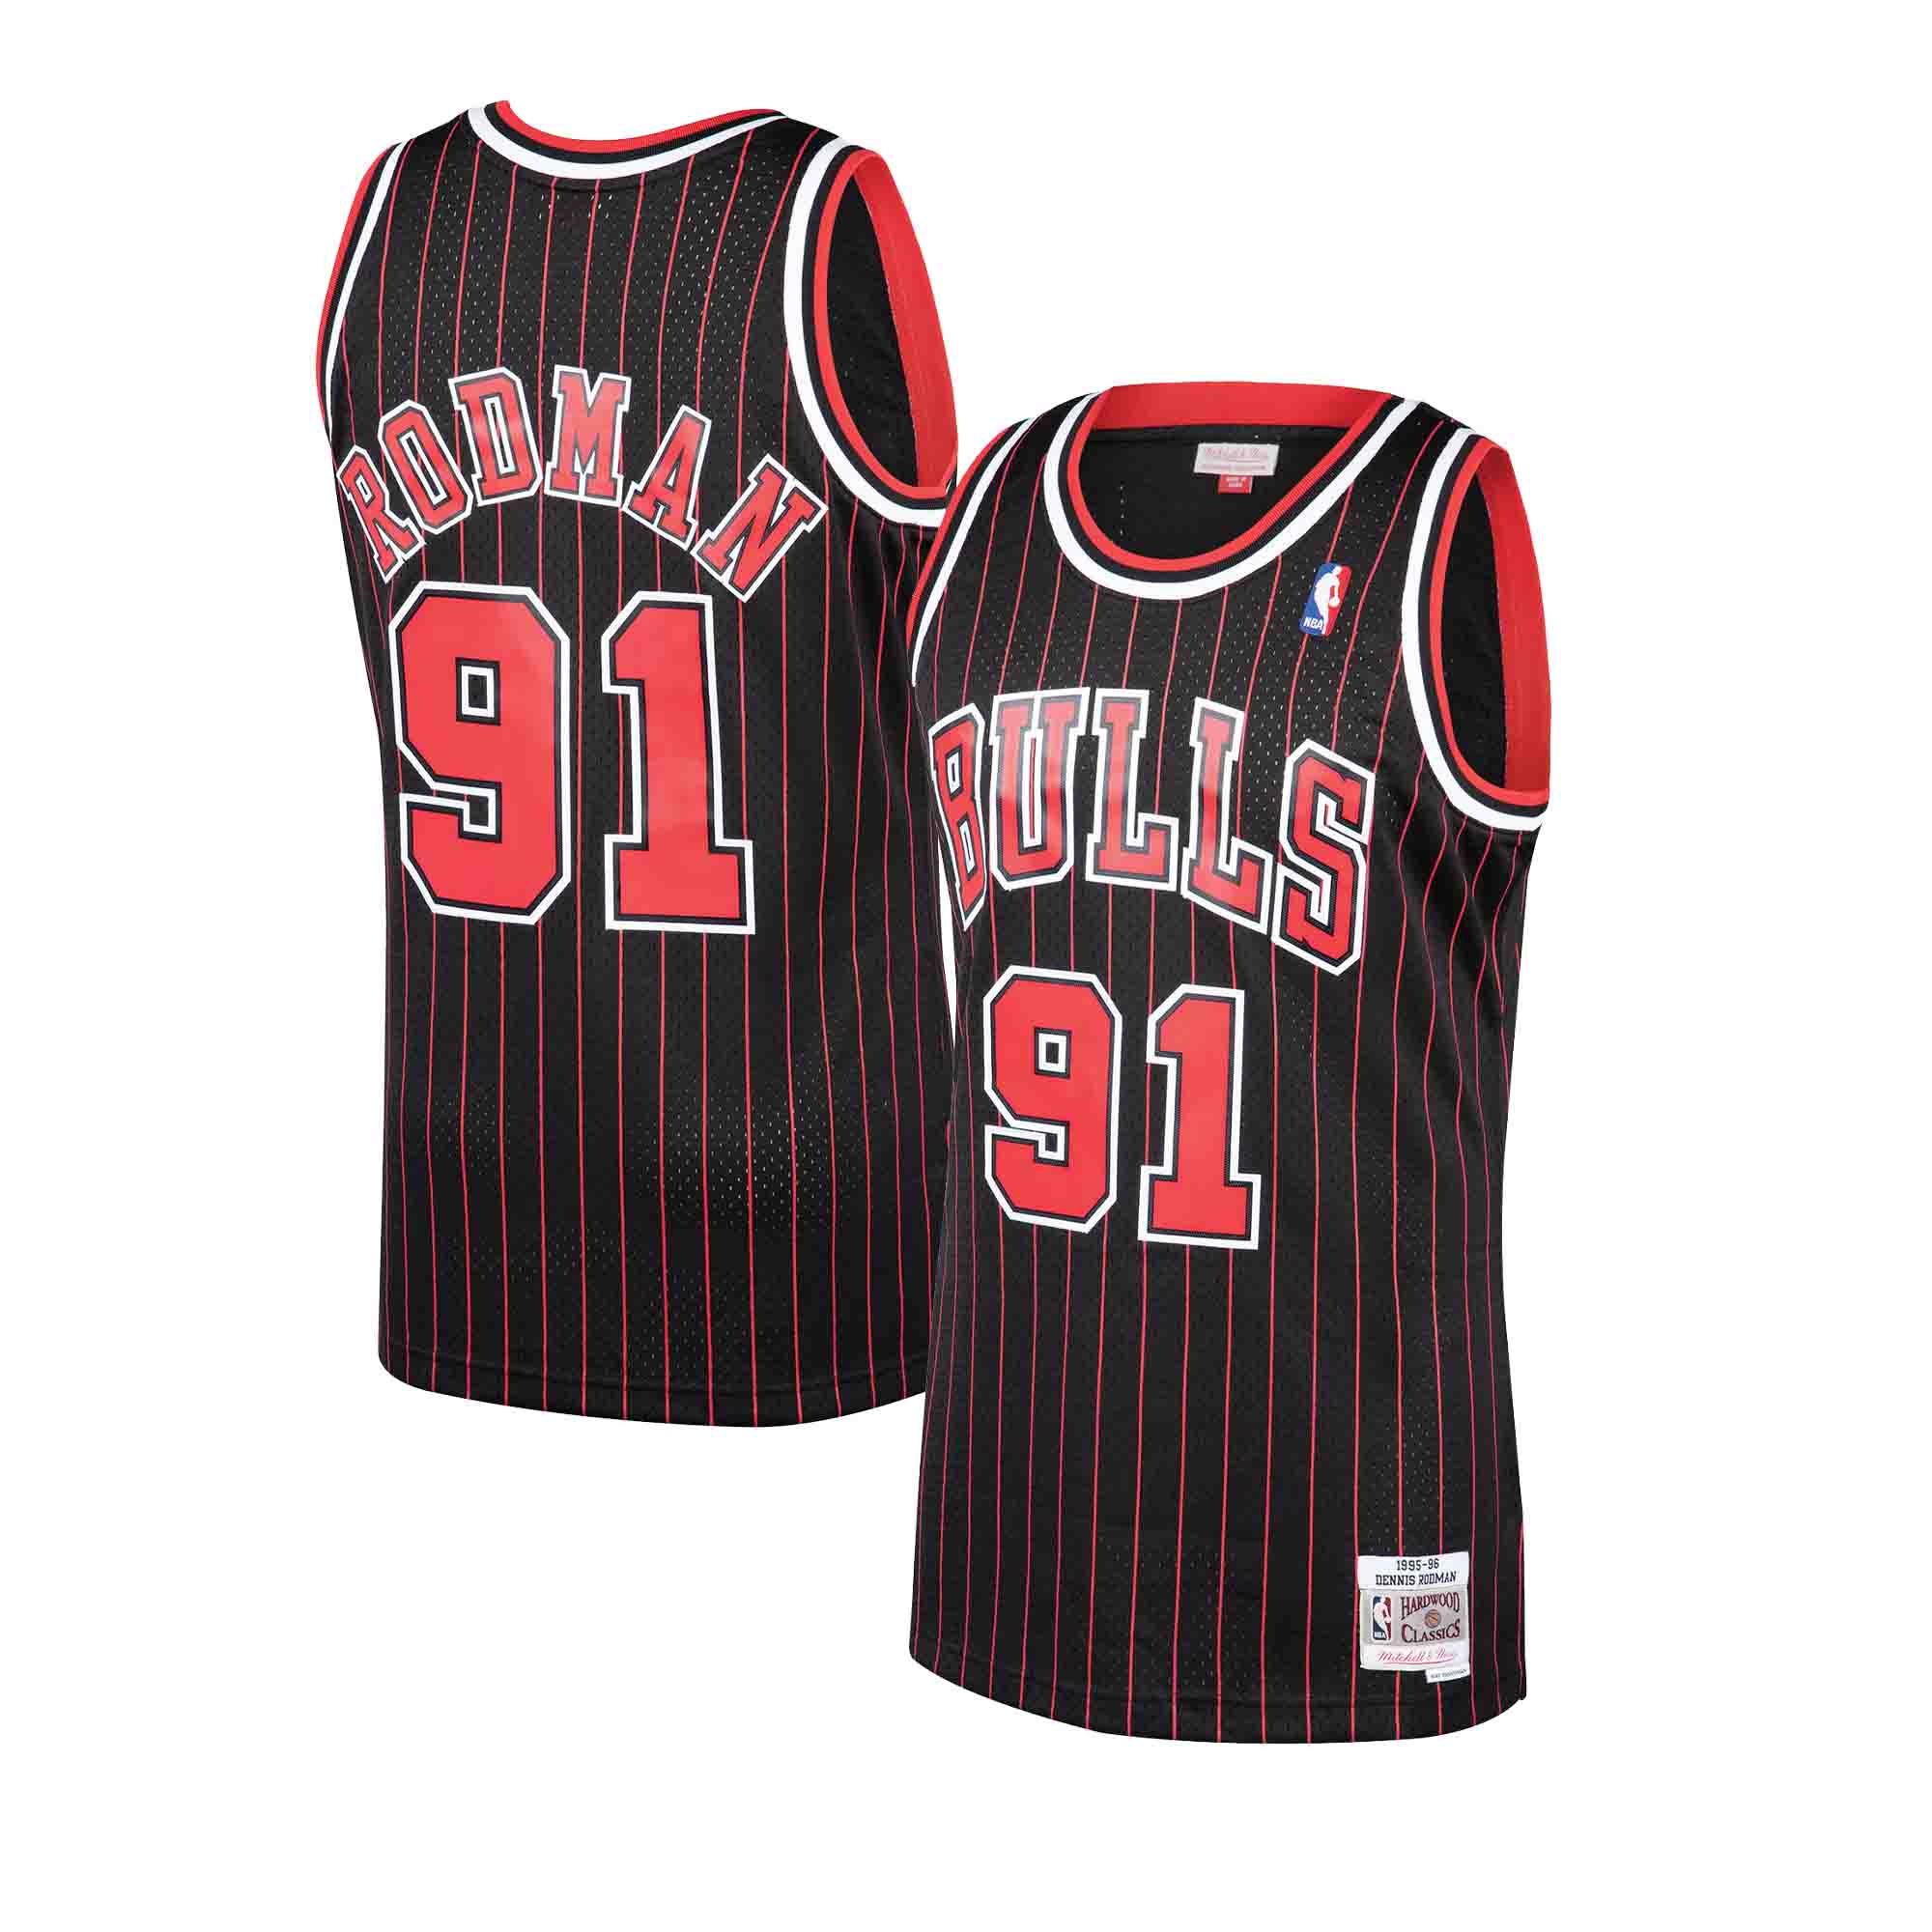  Mitchell & Ness White NBA Chicago Bulls #91 Dennis